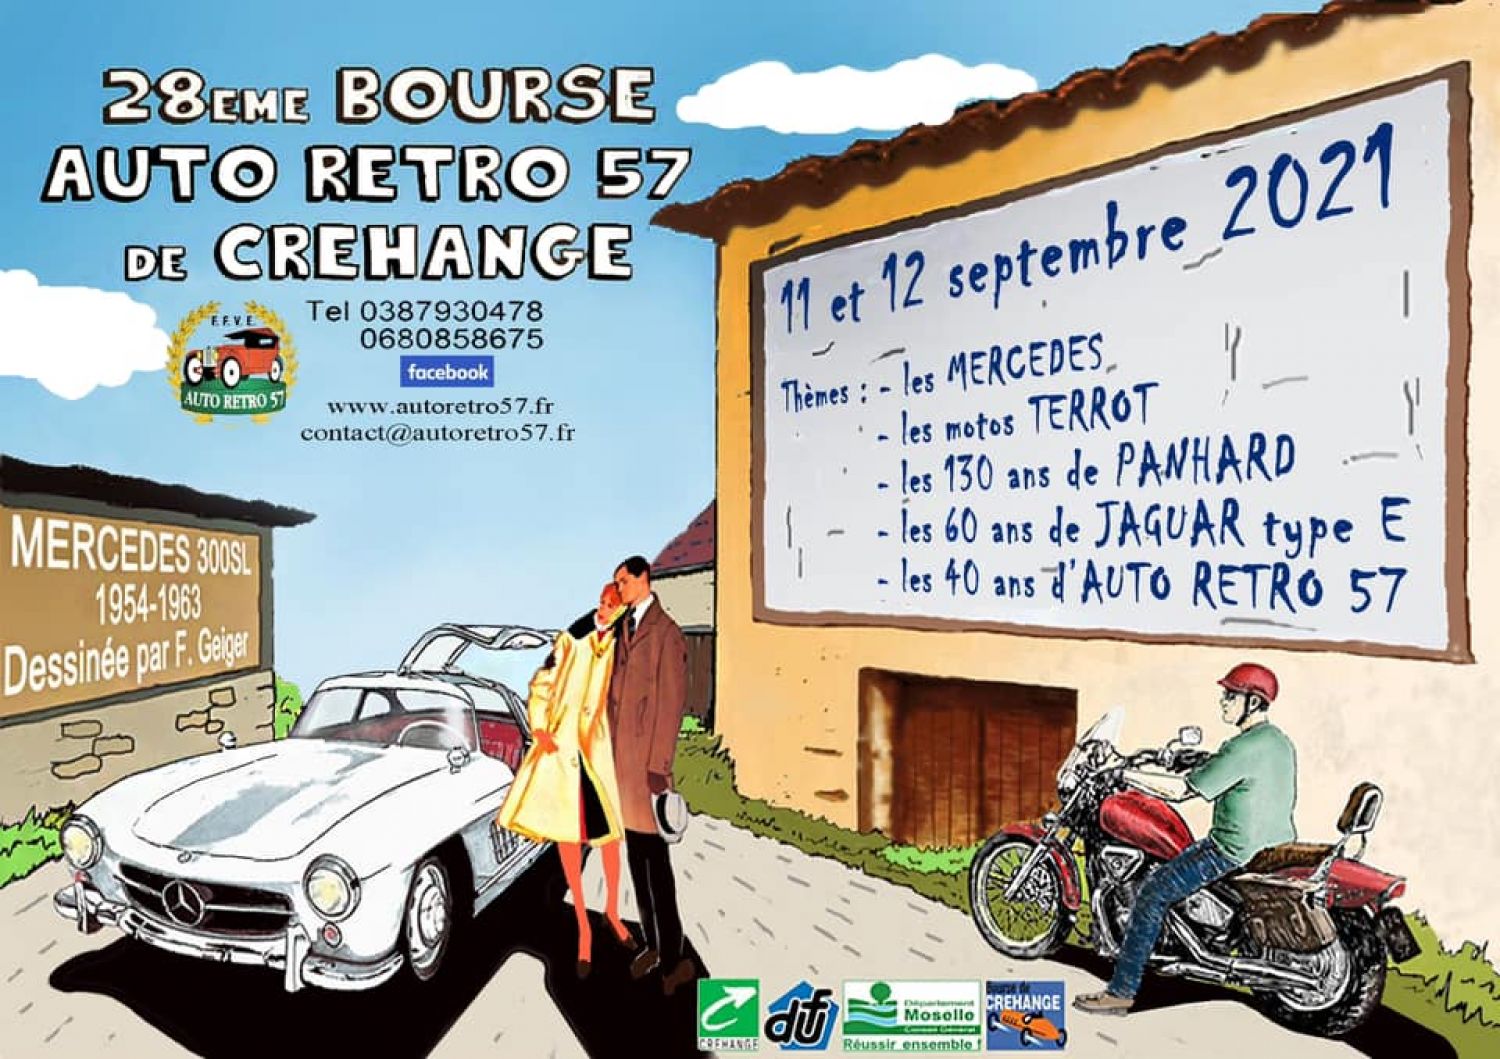 Des voitures et motos rares vous attendent à Créhange ce week-end